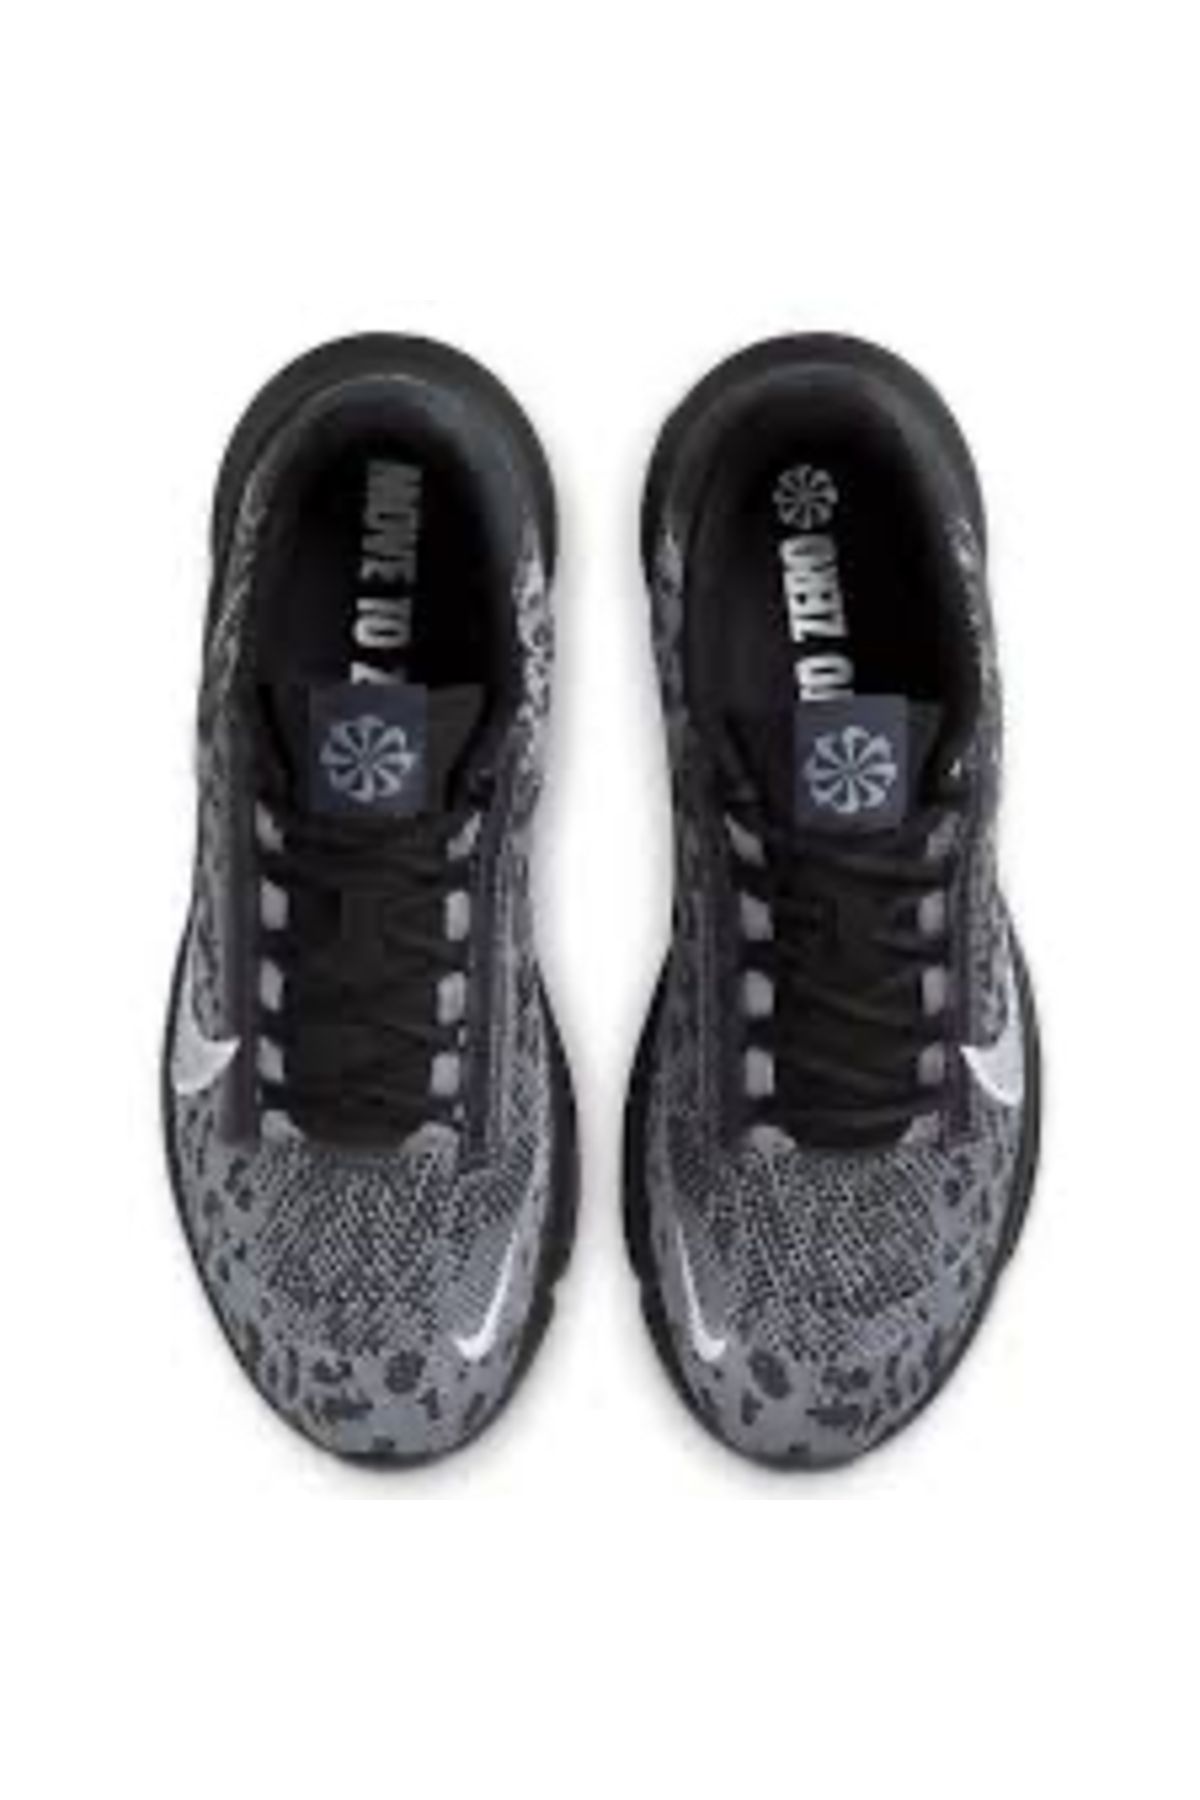 Nike Superrep Go 3 Nn Fk Erkek Siyah Antrenman Ayakkabısı DH3394-006